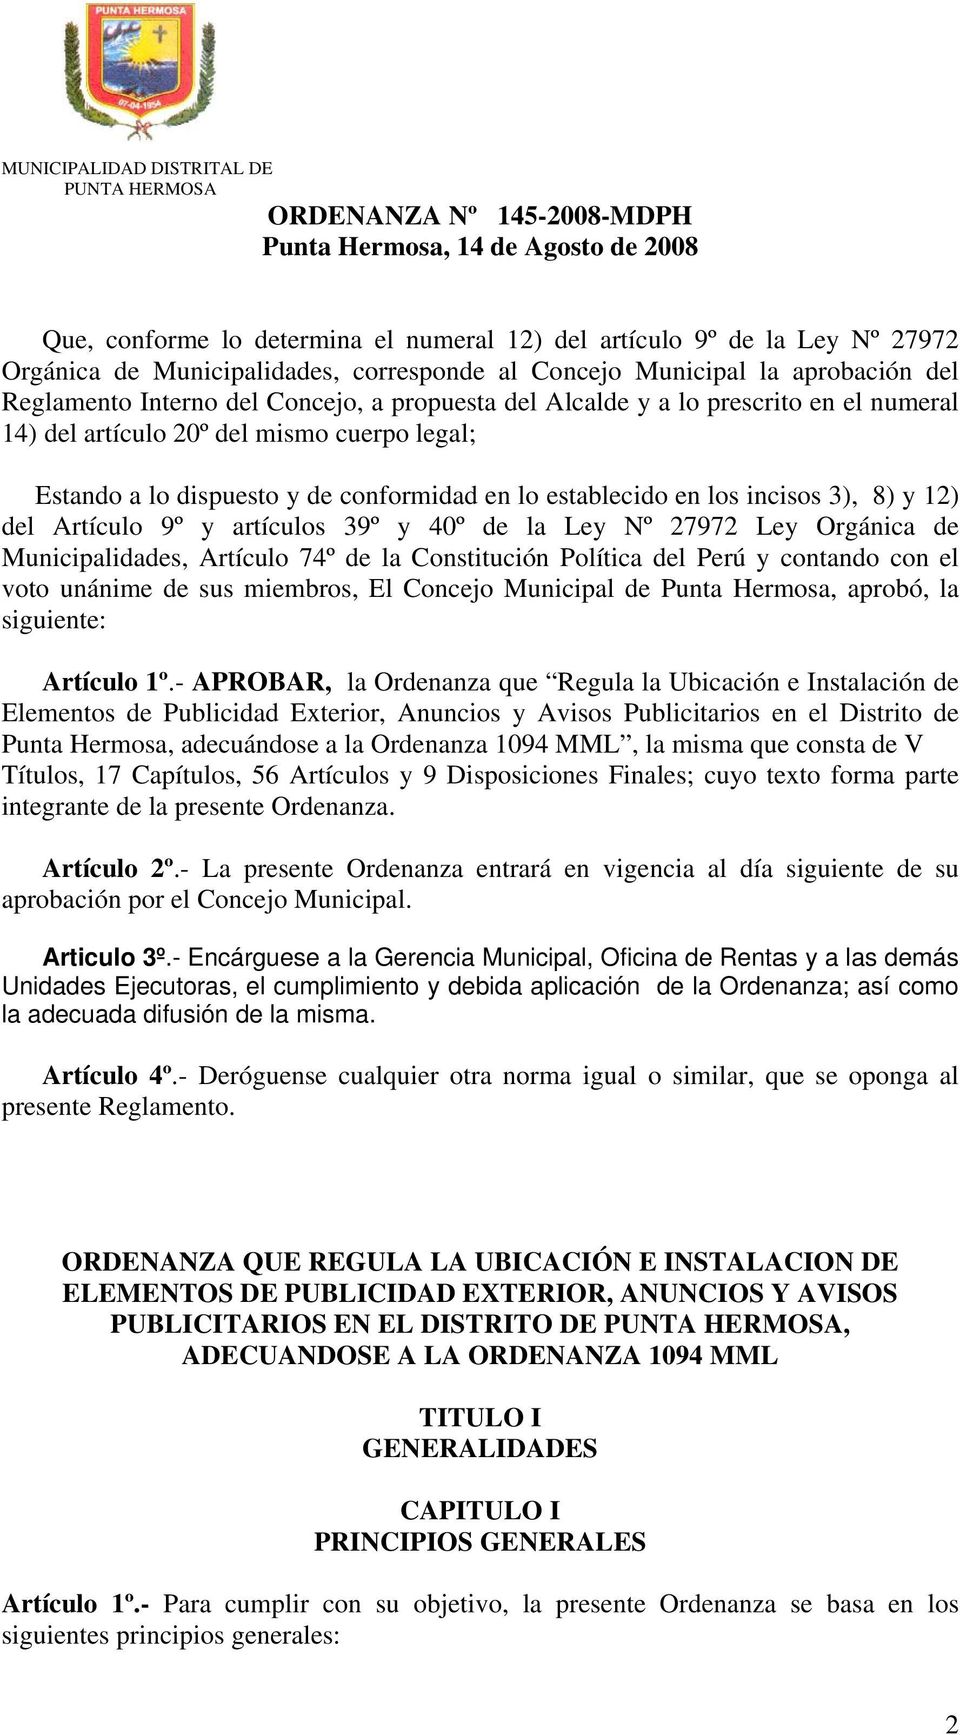 y artículos 39º y 40º de la Ley Nº 27972 Ley Orgánica de Municipalidades, Artículo 74º de la Constitución Política del Perú y contando con el voto unánime de sus miembros, El Concejo Municipal de